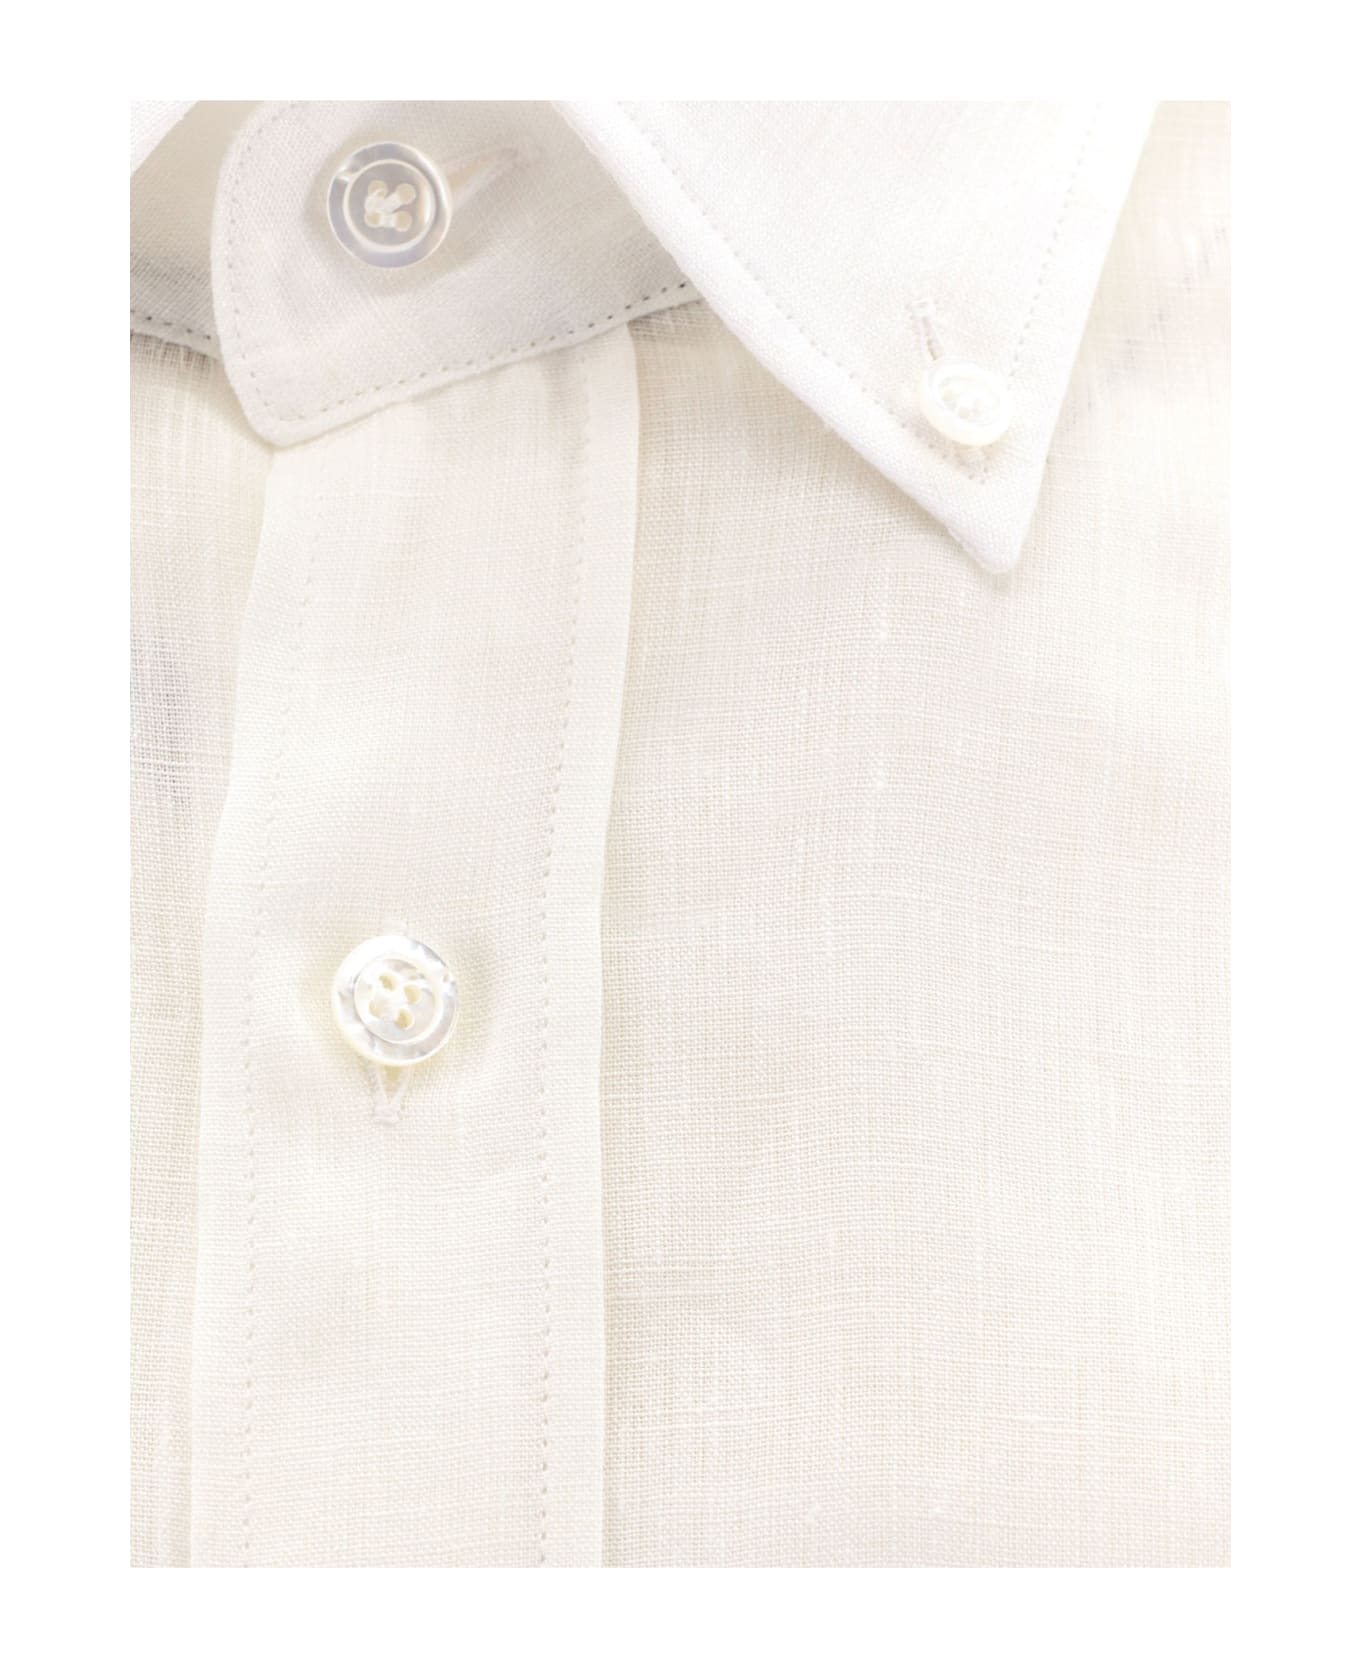 Hugo Boss Ca Shirt - White